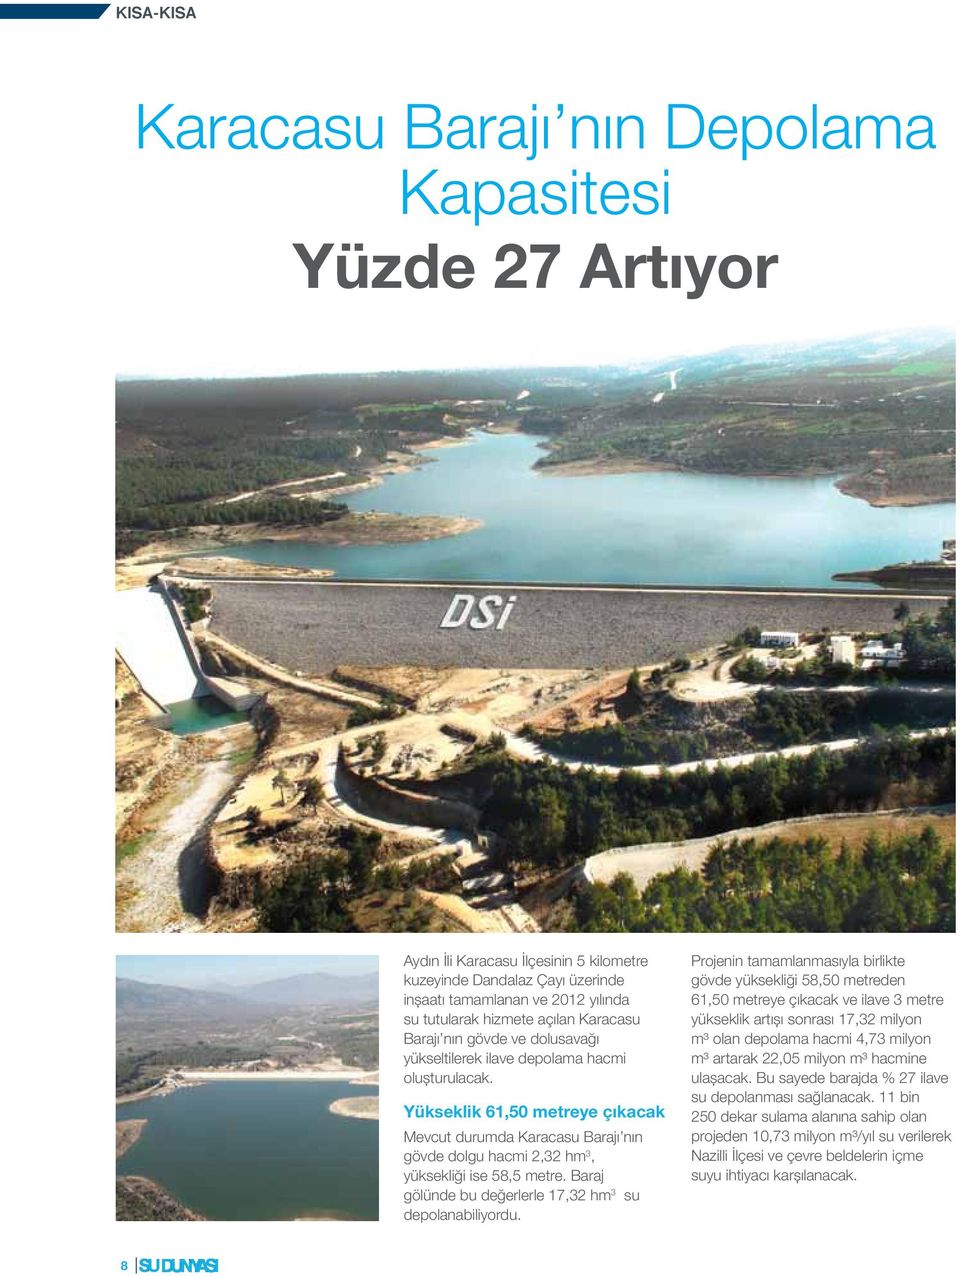 Yükseklik 61,50 metreye çıkacak Mevcut durumda Karacasu Barajı nın gövde dolgu hacmi 2,32 hm 3, yüksekliği ise 58,5 metre. Baraj gölünde bu değerlerle 17,32 hm 3 su depolanabiliyordu.